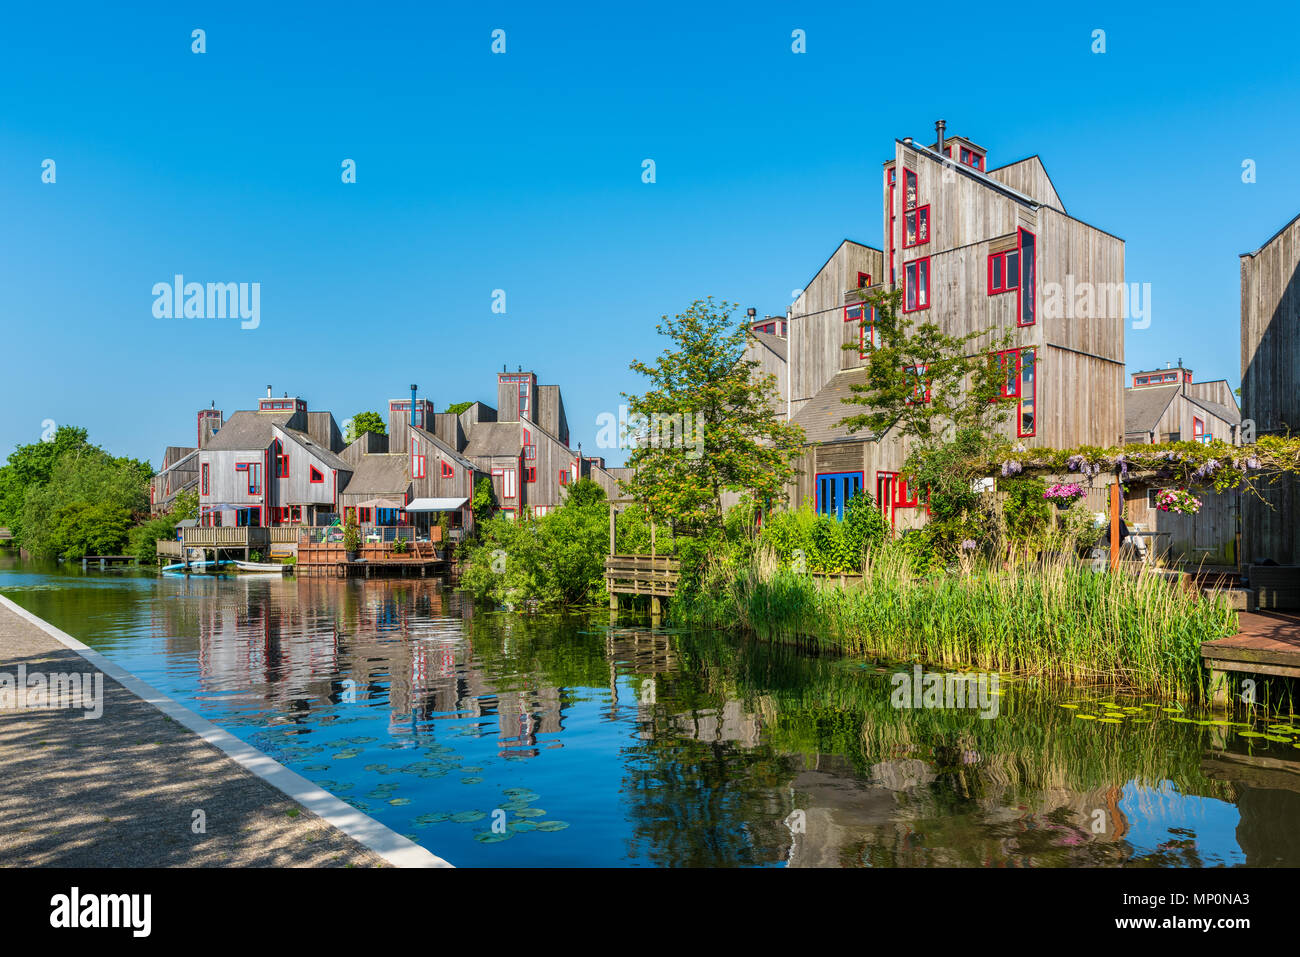 Modern Neighbourhood with Wooden Houses in Alkmaar Netherlands Stock Photo